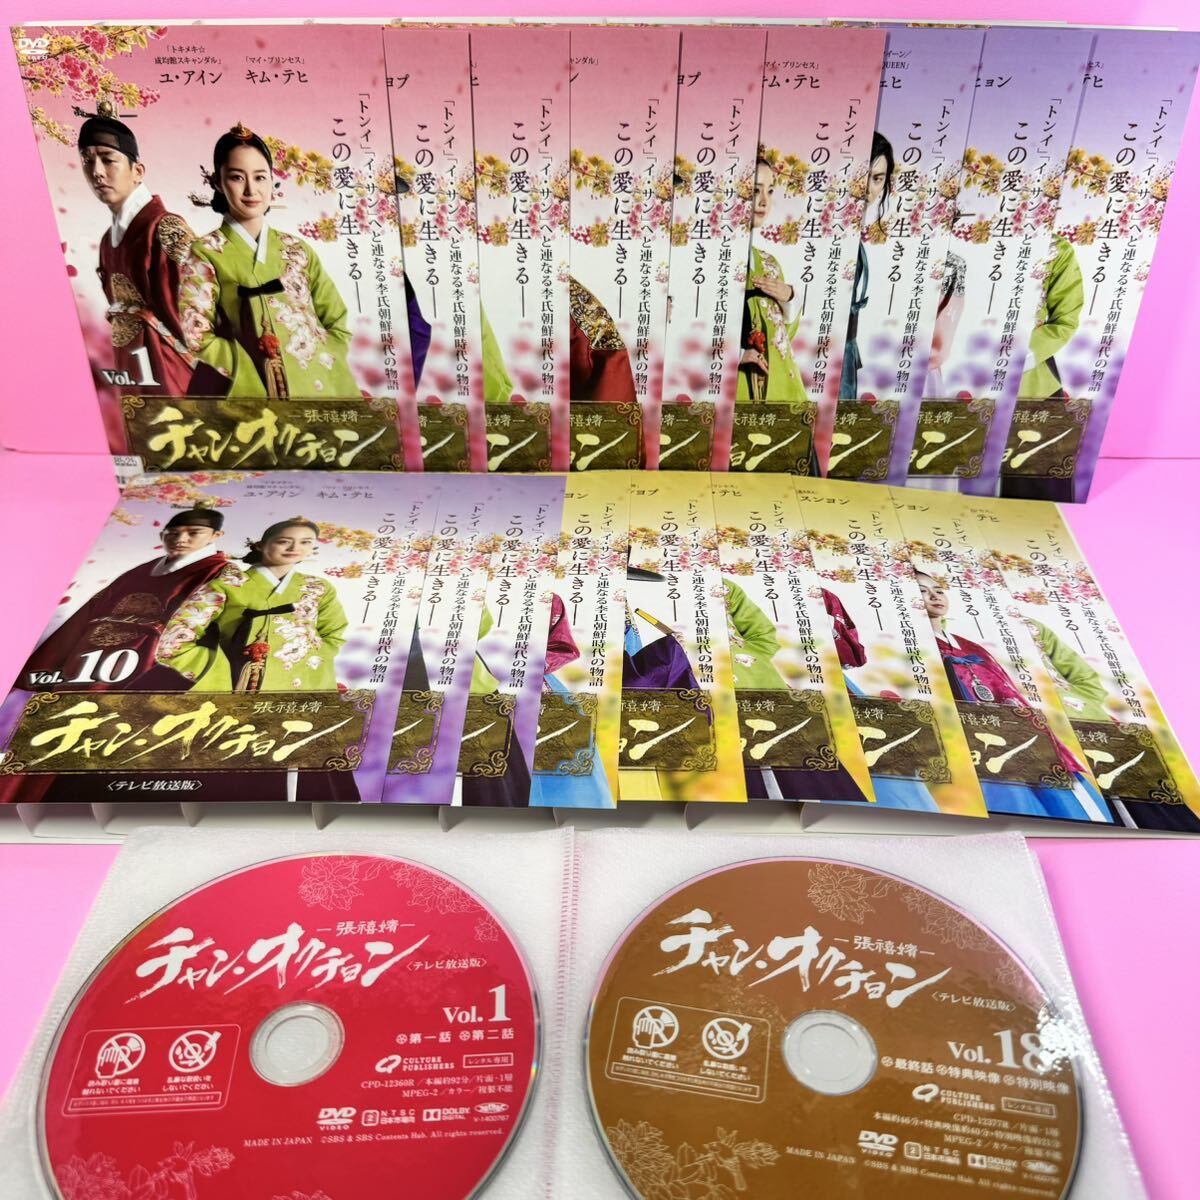 チャン・オクチョン DVD 全18巻 全巻セット キム・テヒ / ユ・アイン